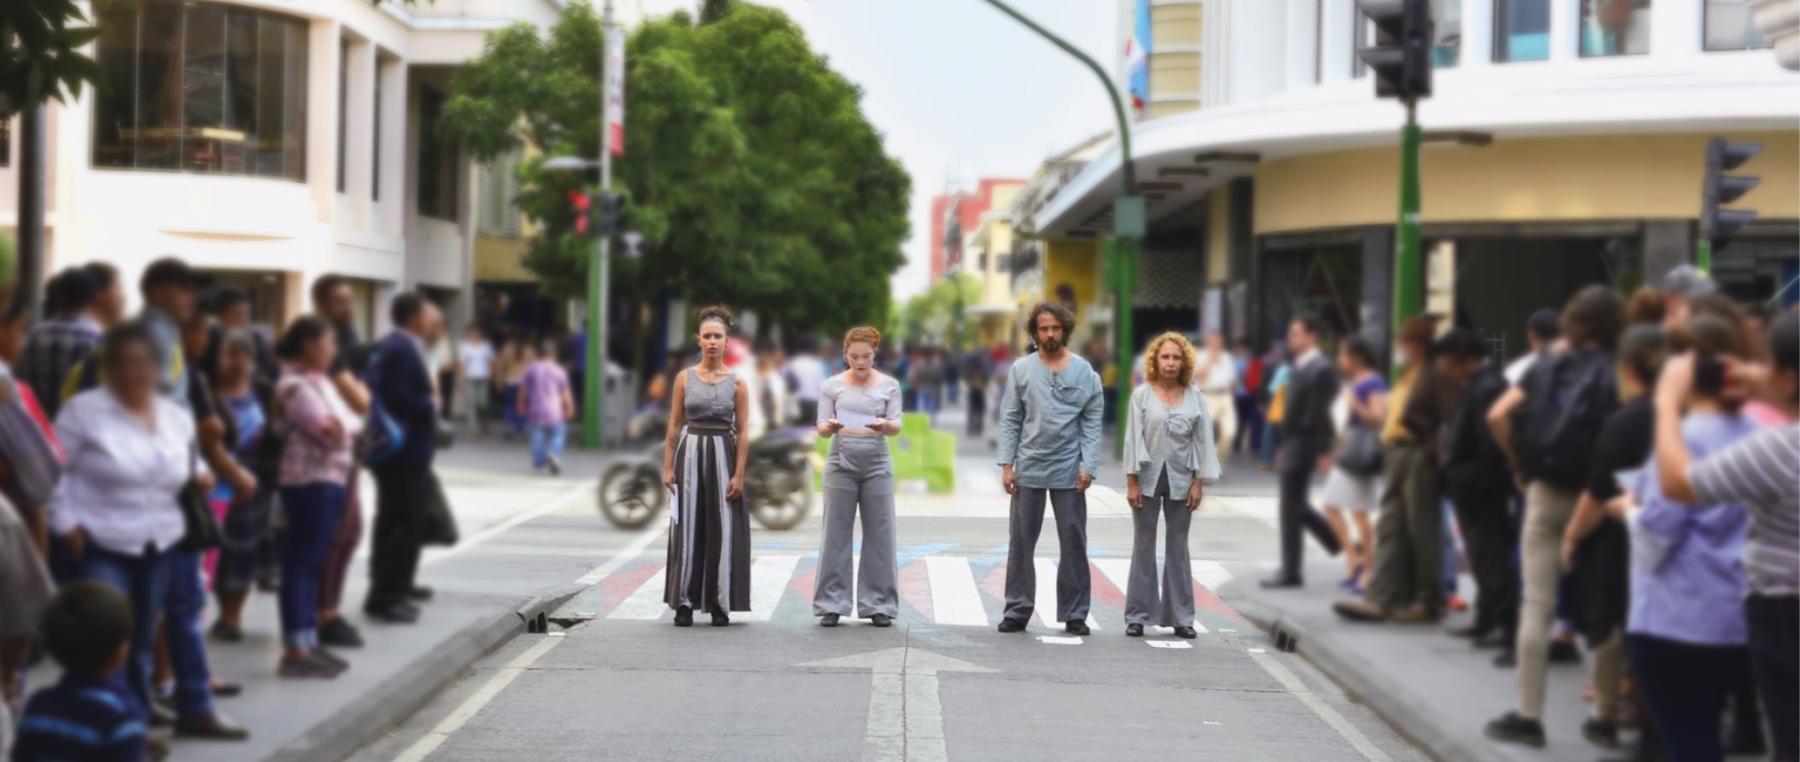 Fotografia. Quatro artistas se apresentam em uma via pública. Eles estão em cima de uma faixa de pedestres, perfilados. Todos usam roupas com tons de cinza. Há pessoas nas calçadas observando a cena.